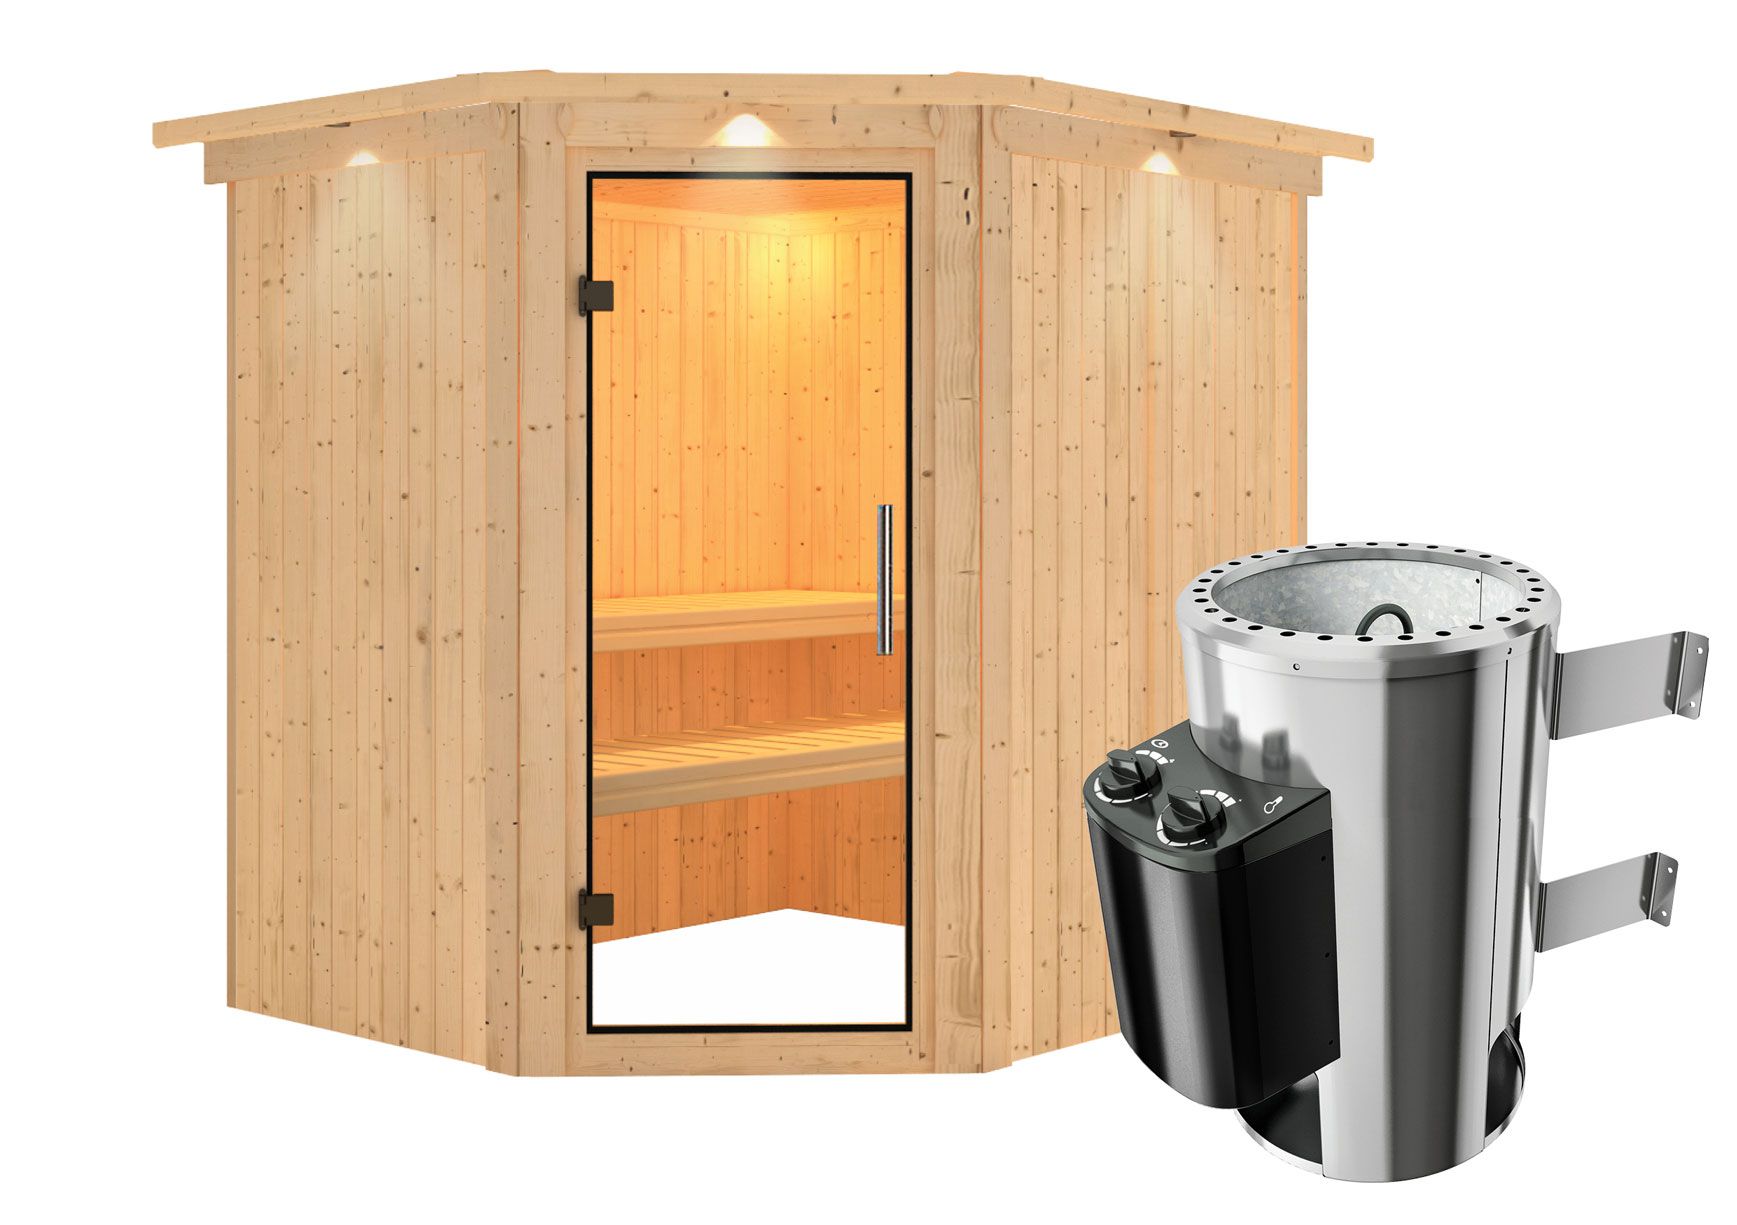 Sauna "Askjell" SET AKTION mit Klarglastür, Kranz & Ofen 3,6 kW - 210 x 184 x 202 cm (B x T x H)